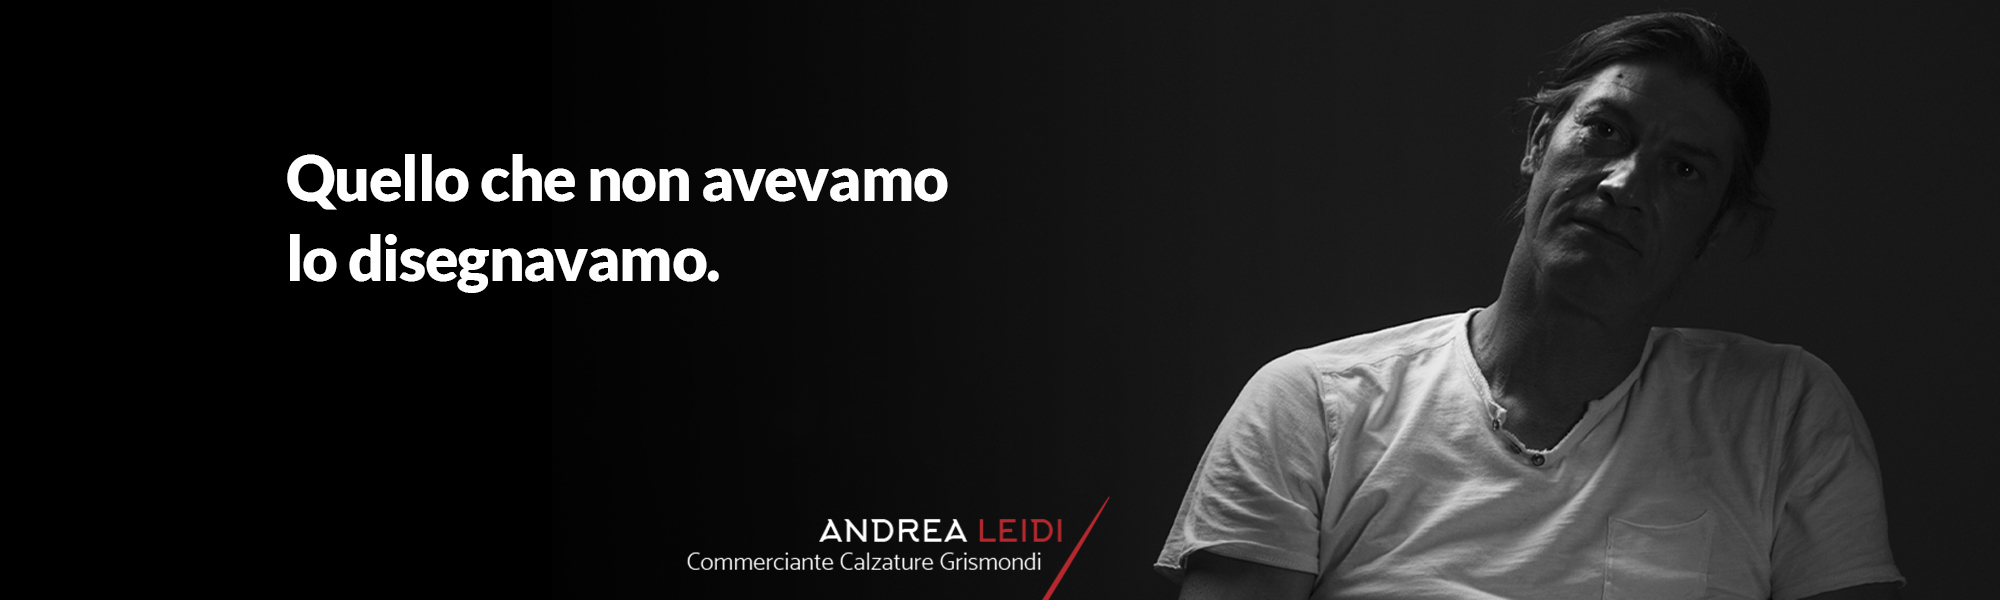 Andrea Leidi